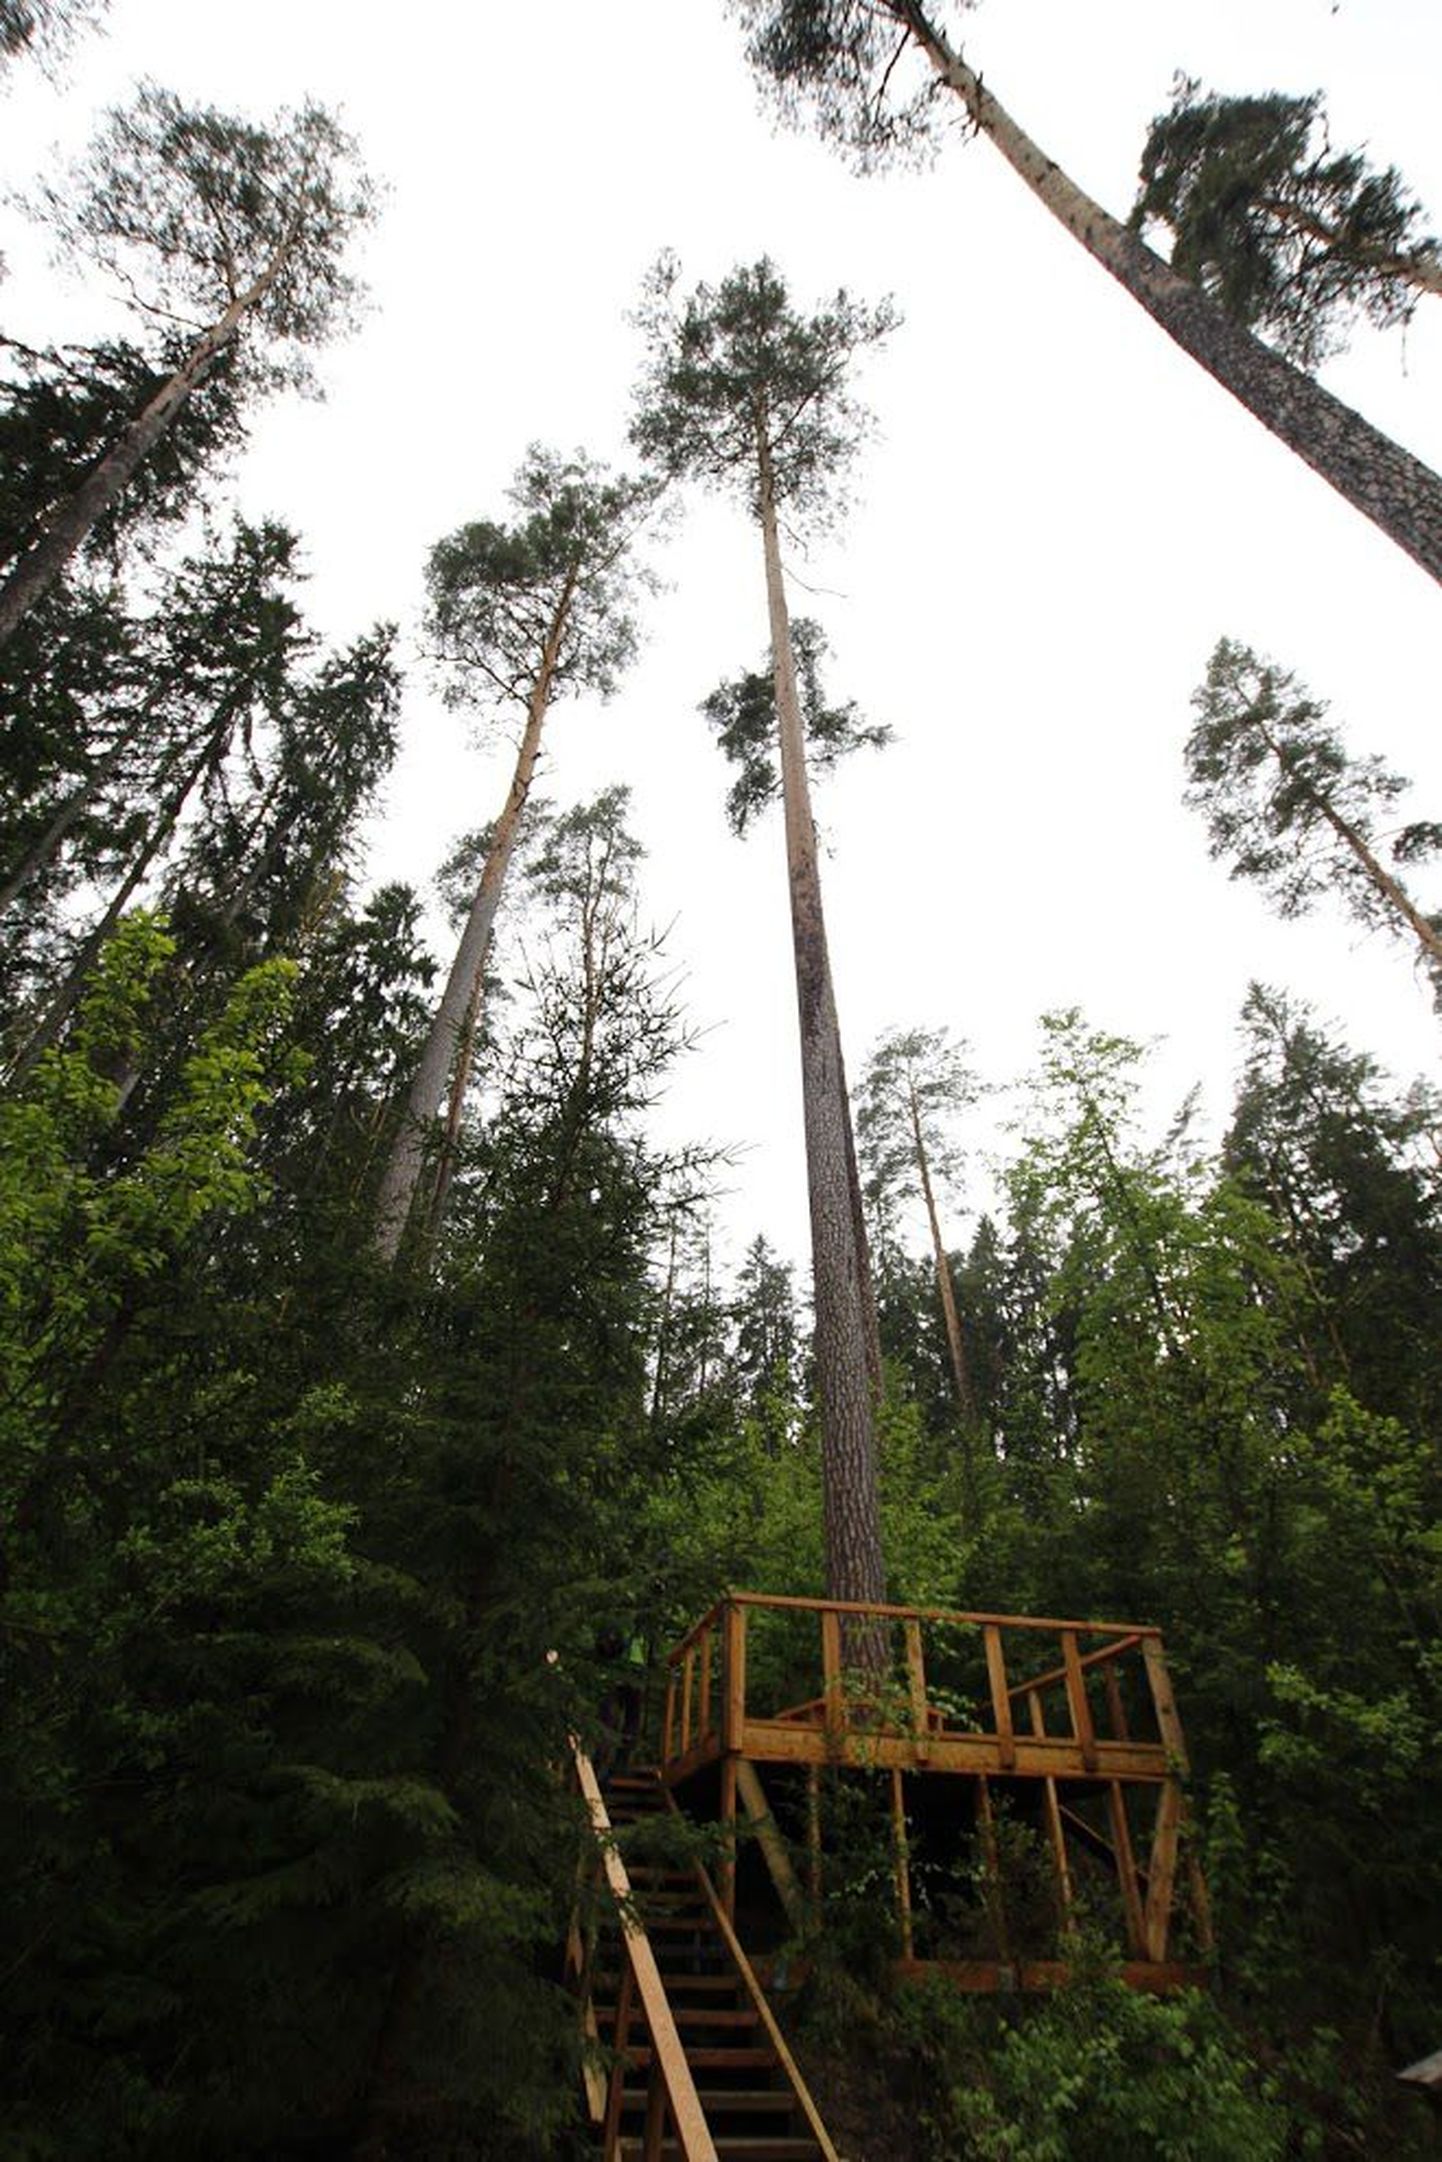 Põlvamaal Veriora vallas Ootsipalu orus kasvav Eesti kõrgeim mänd on teadaolevalt kõrgeim hariliku männi ehk Pinus sylvestris’e esindaja kogu maailmas. Pilt on illustreeriv.